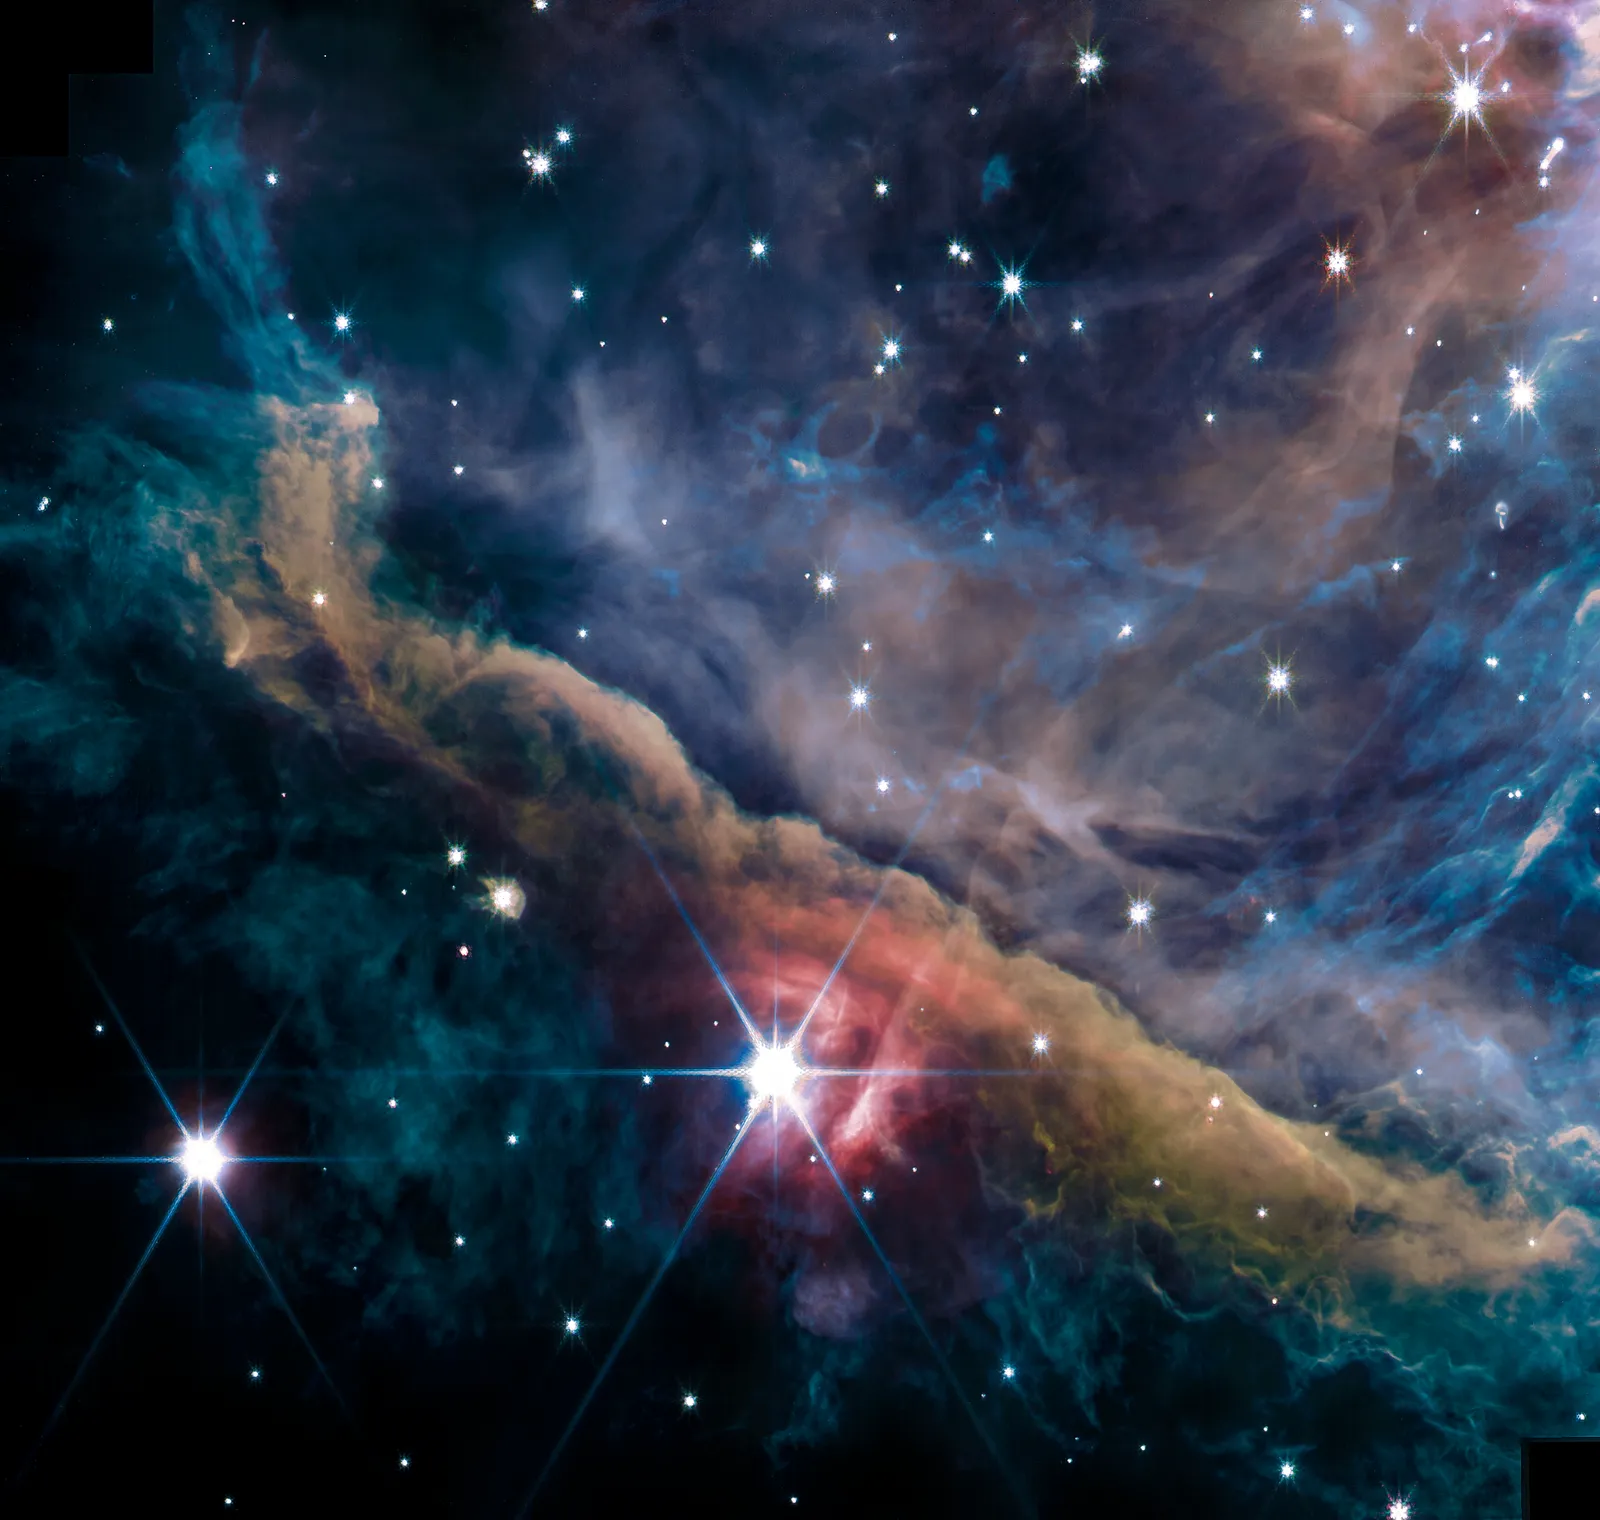 hubble space telescope nebula observation nat